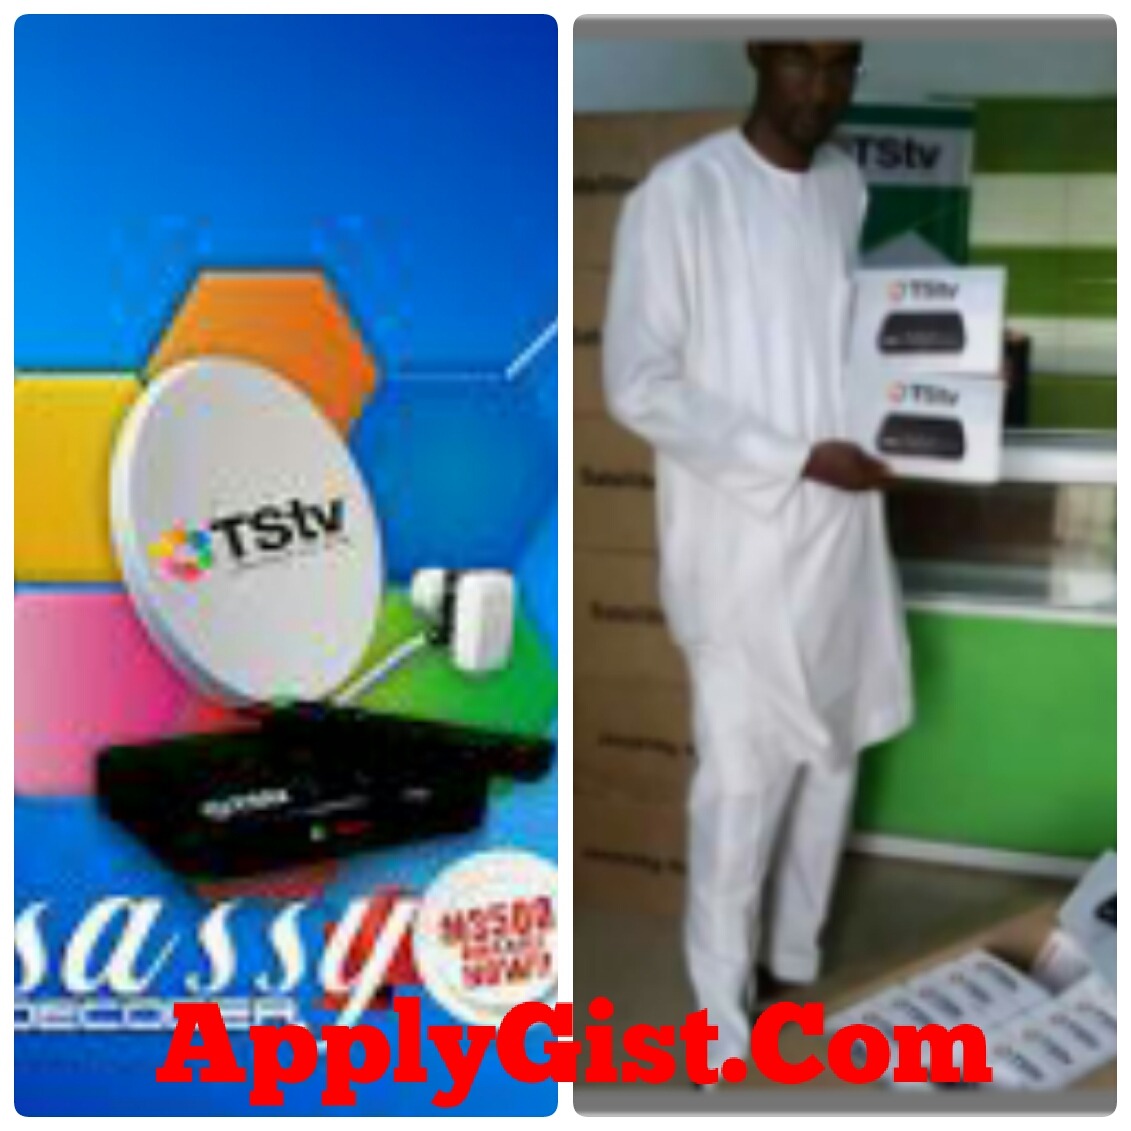 Where To Buy TSTV Sassy Decoder In Ibadan, Nigeria